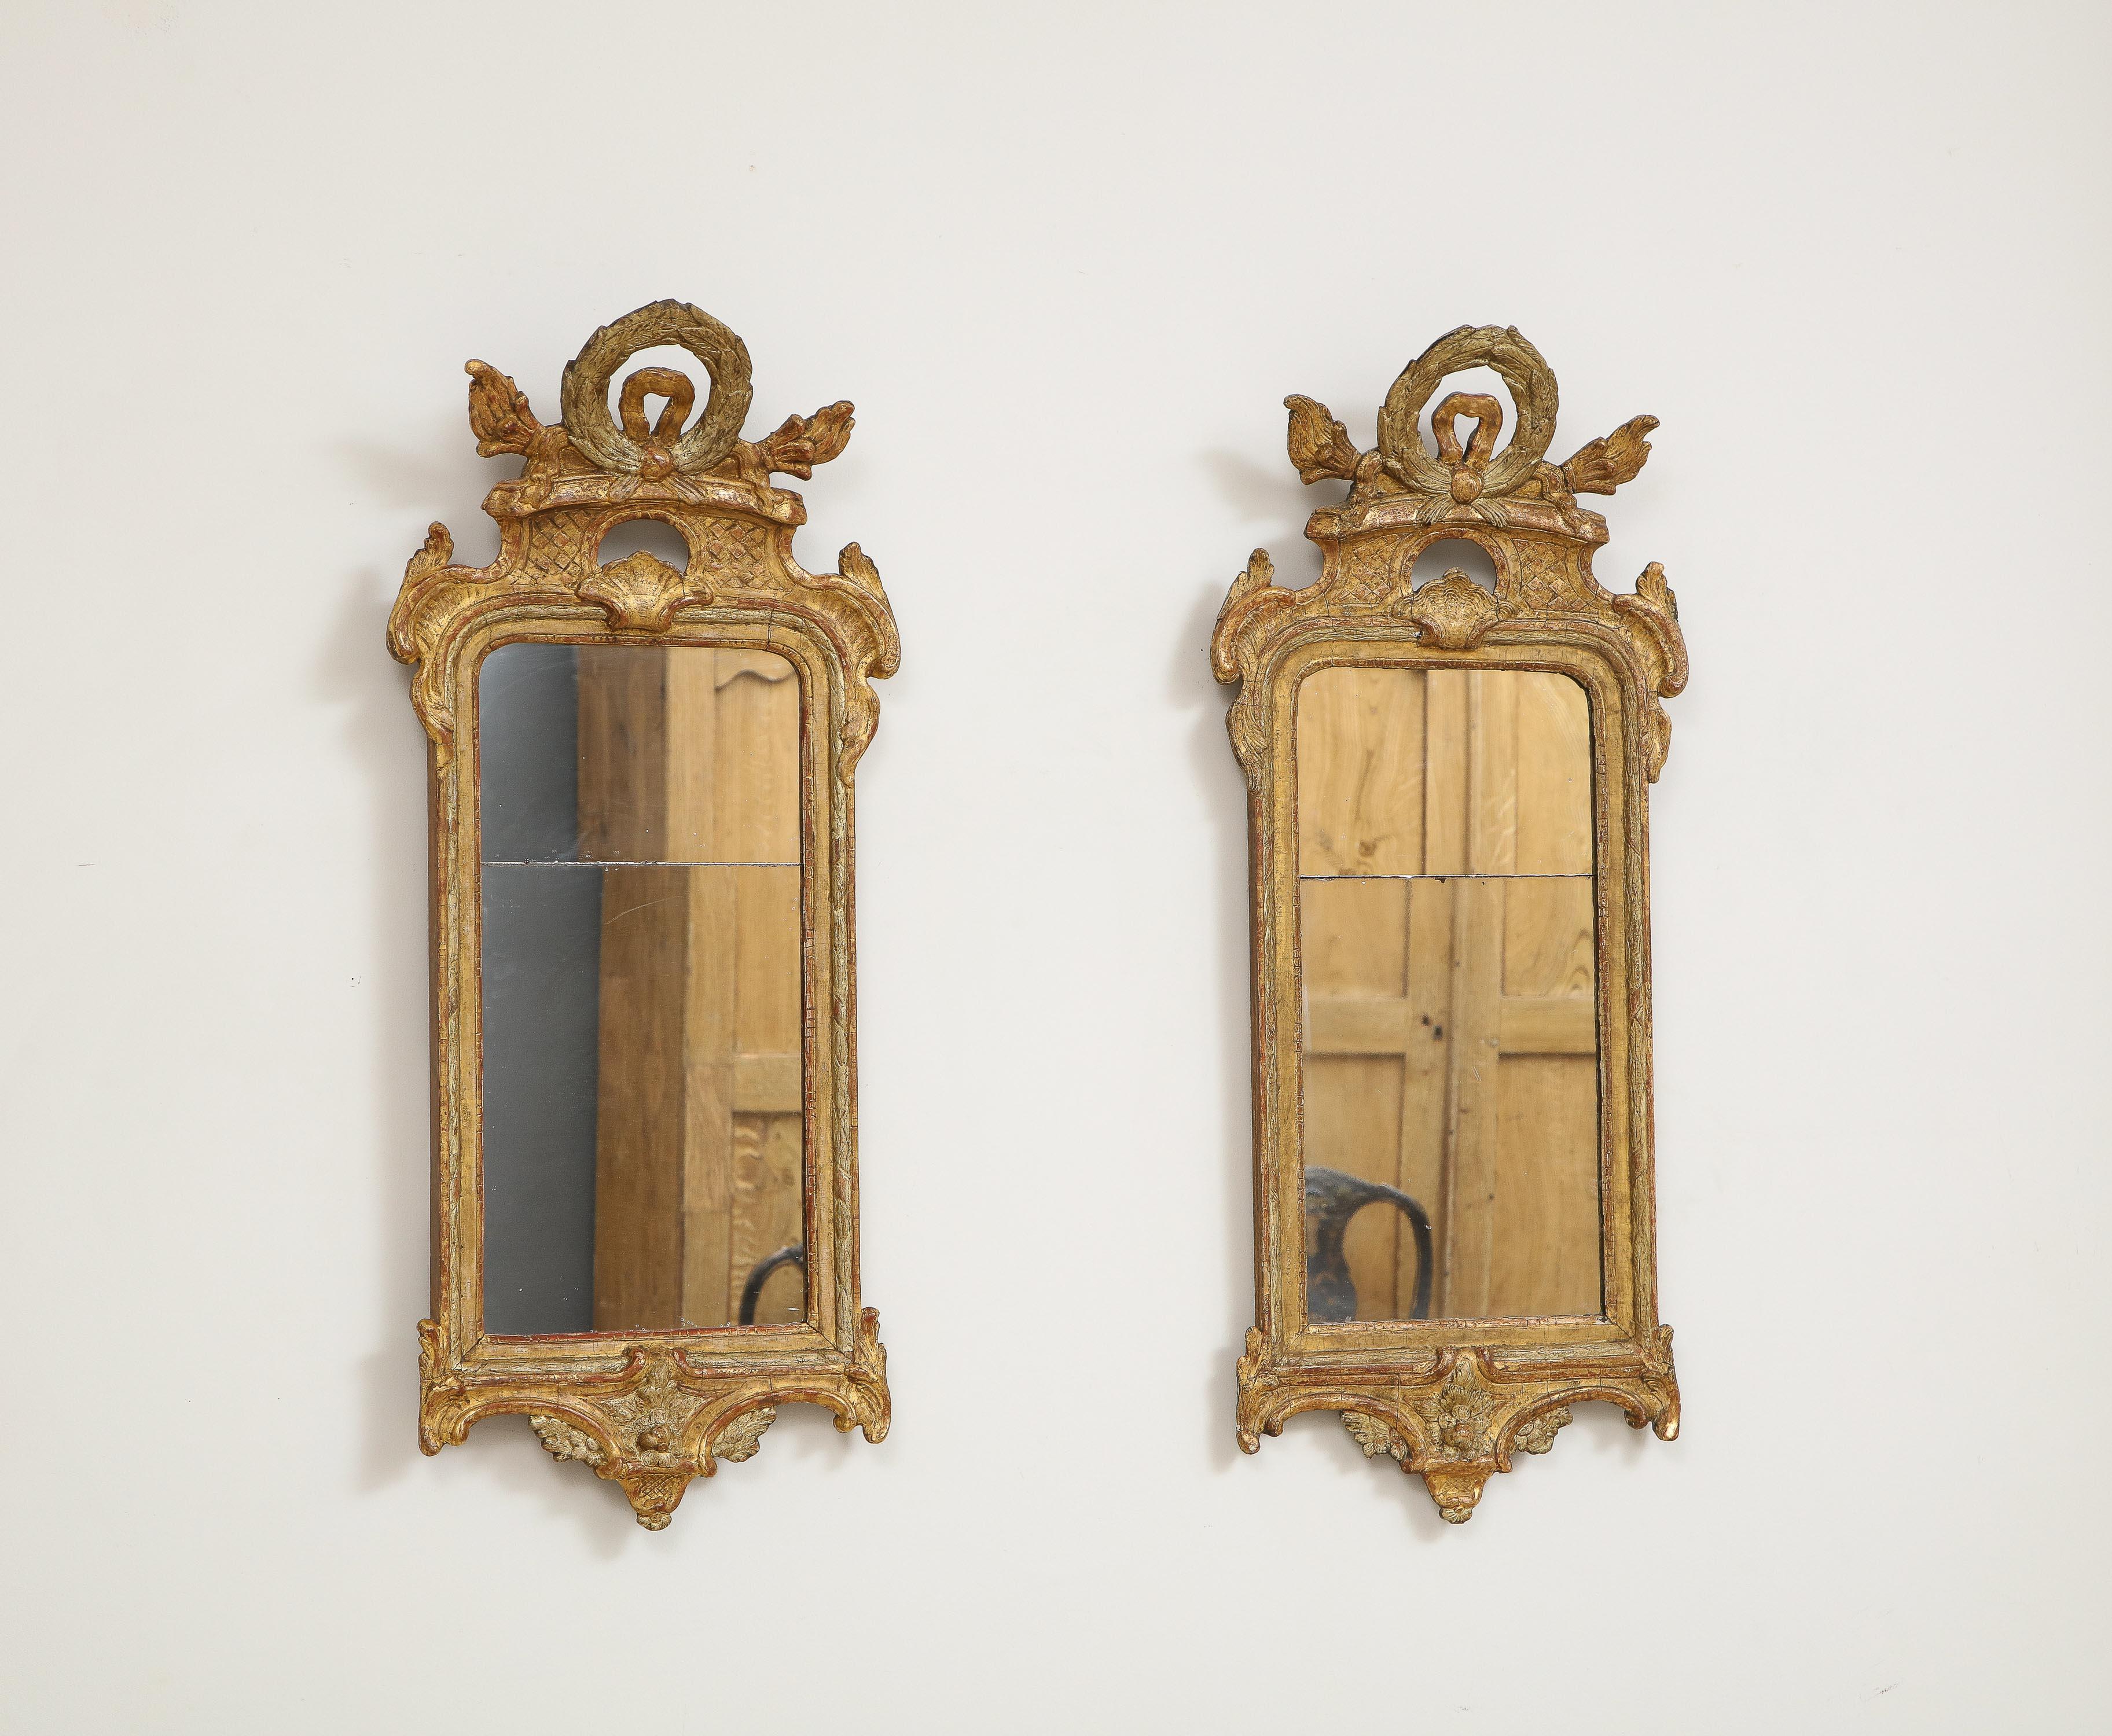 Olaf Wetterberg (1745 Schweden 1803), Rokokospiegel, Paar, um 1760, vergoldetes Holz mit Originalplatten.

Eine Besonderheit der schwedischen Spiegel bis weit ins 19. Jahrhundert hinein ist, dass sie nur in den größten Zusammenhängen aus zwei Teilen